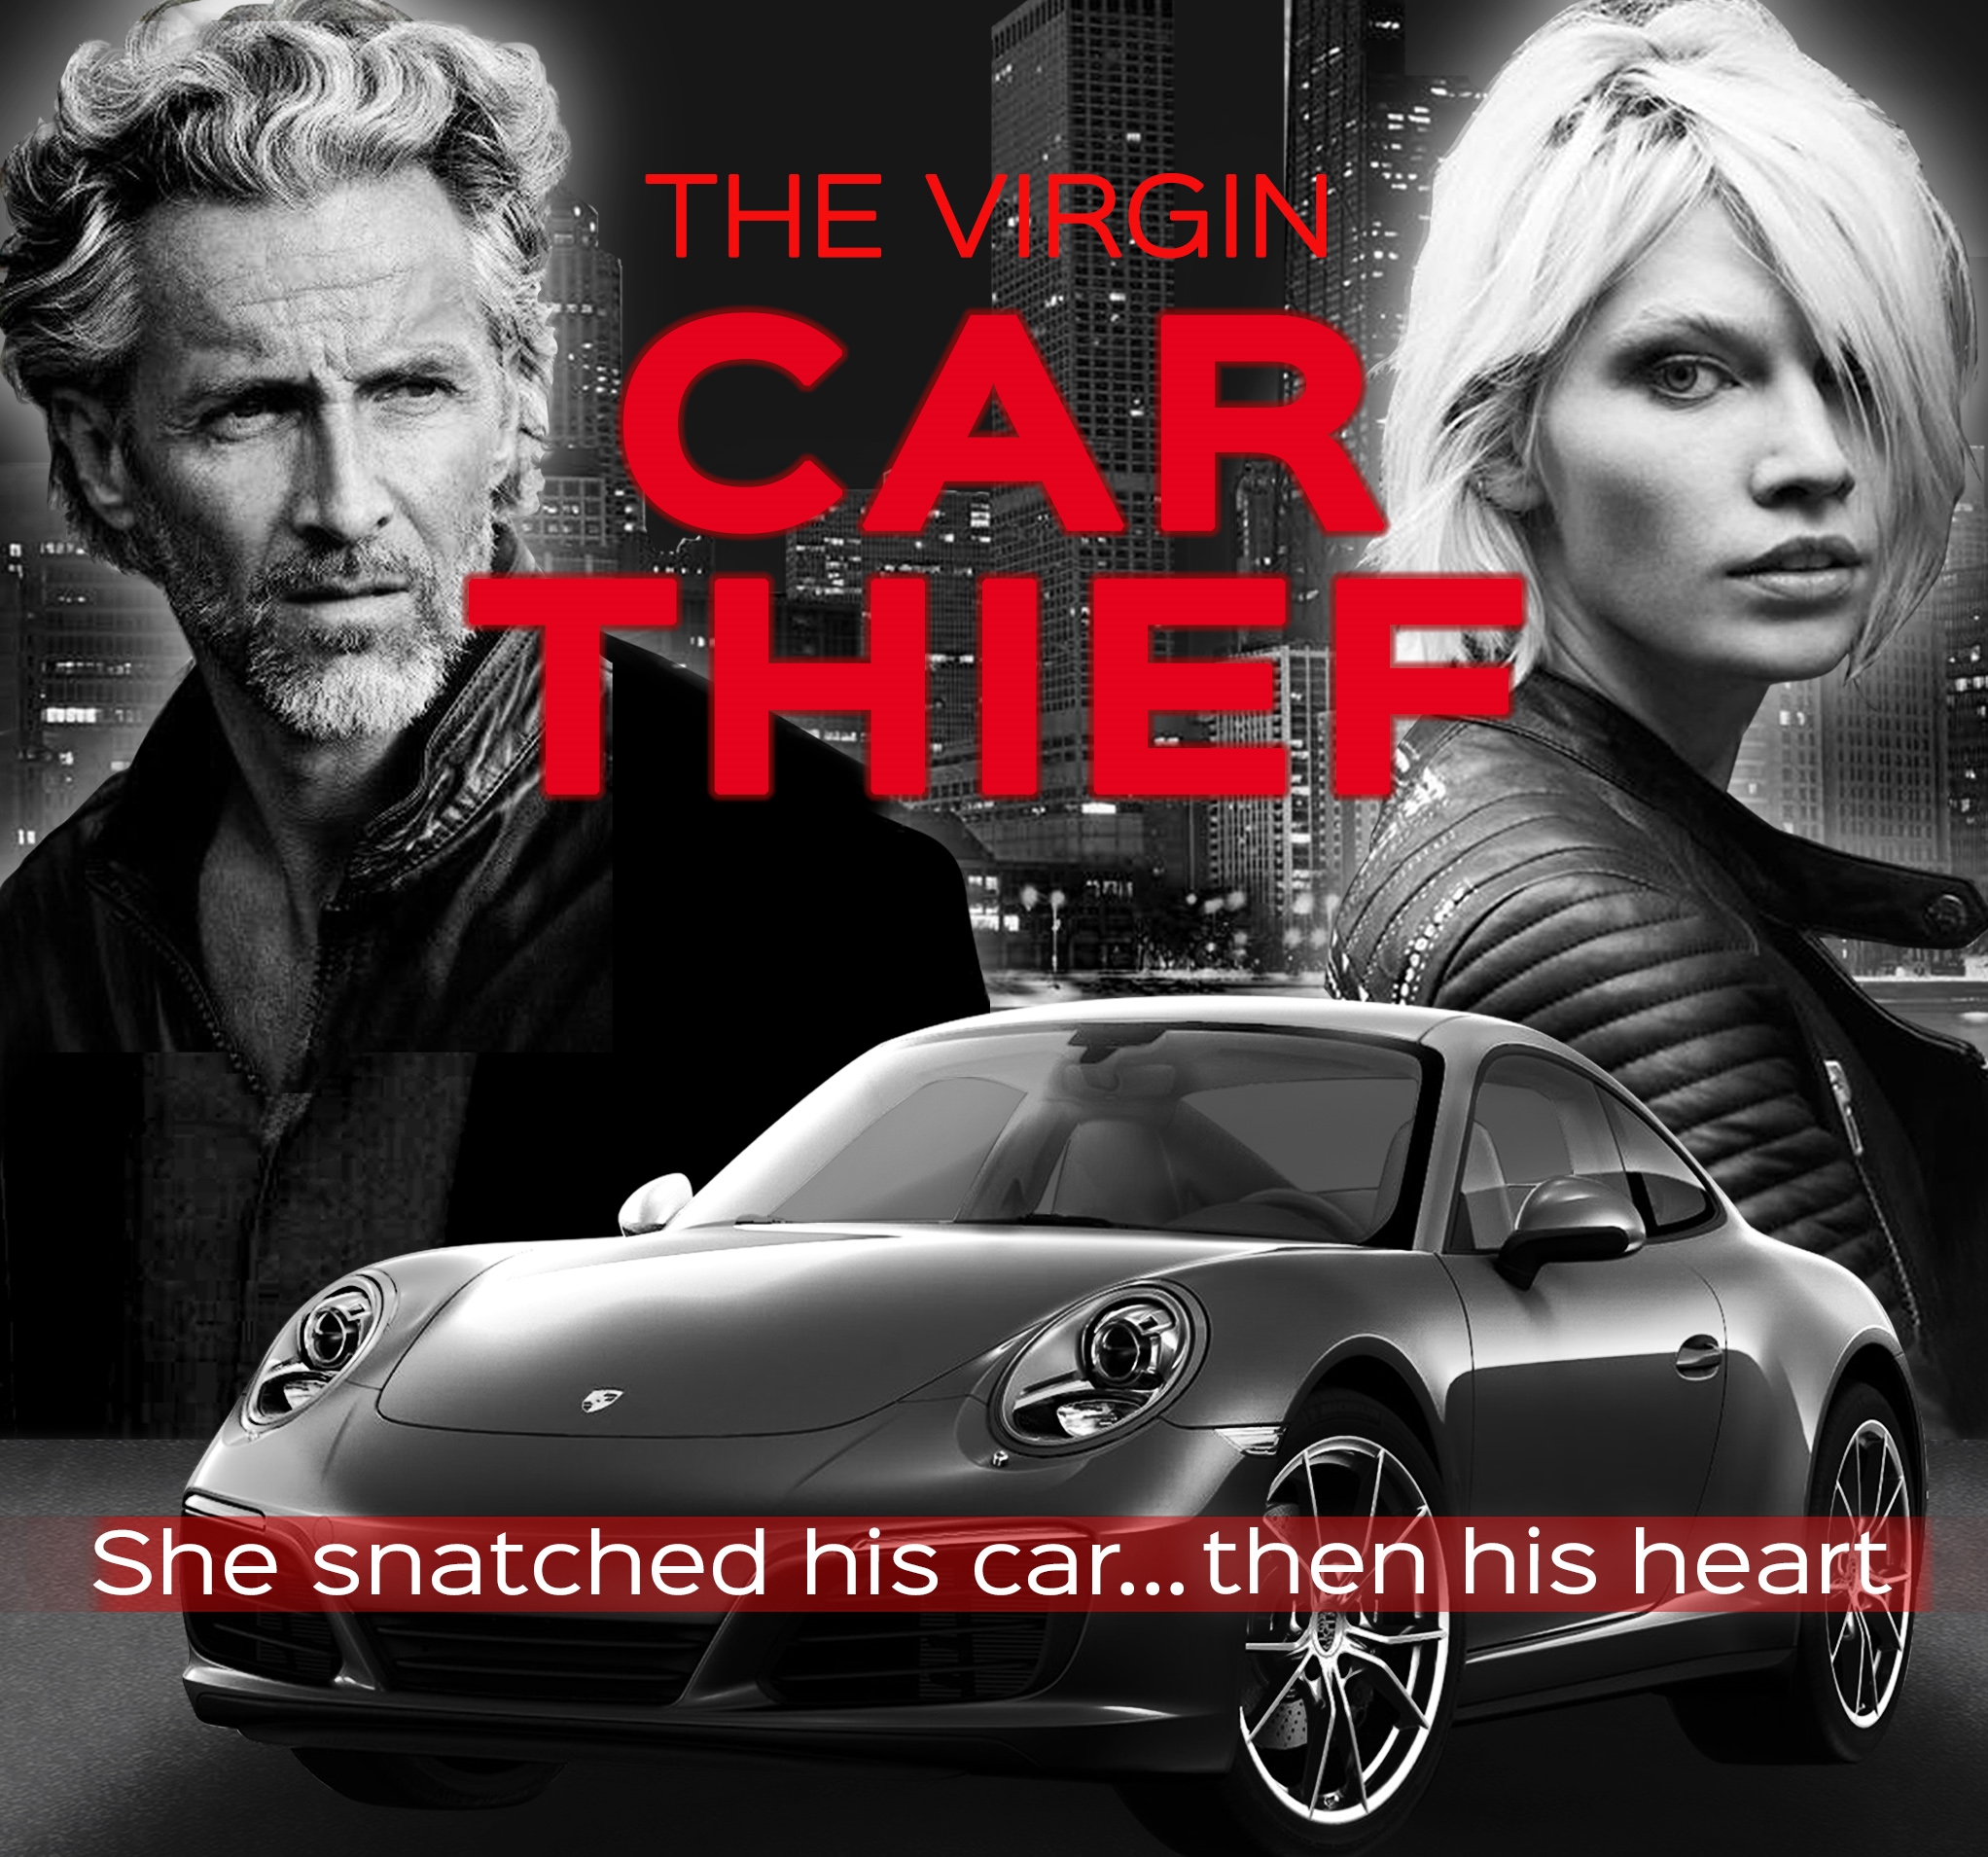 Virgin Car Thief poster 11-29-23